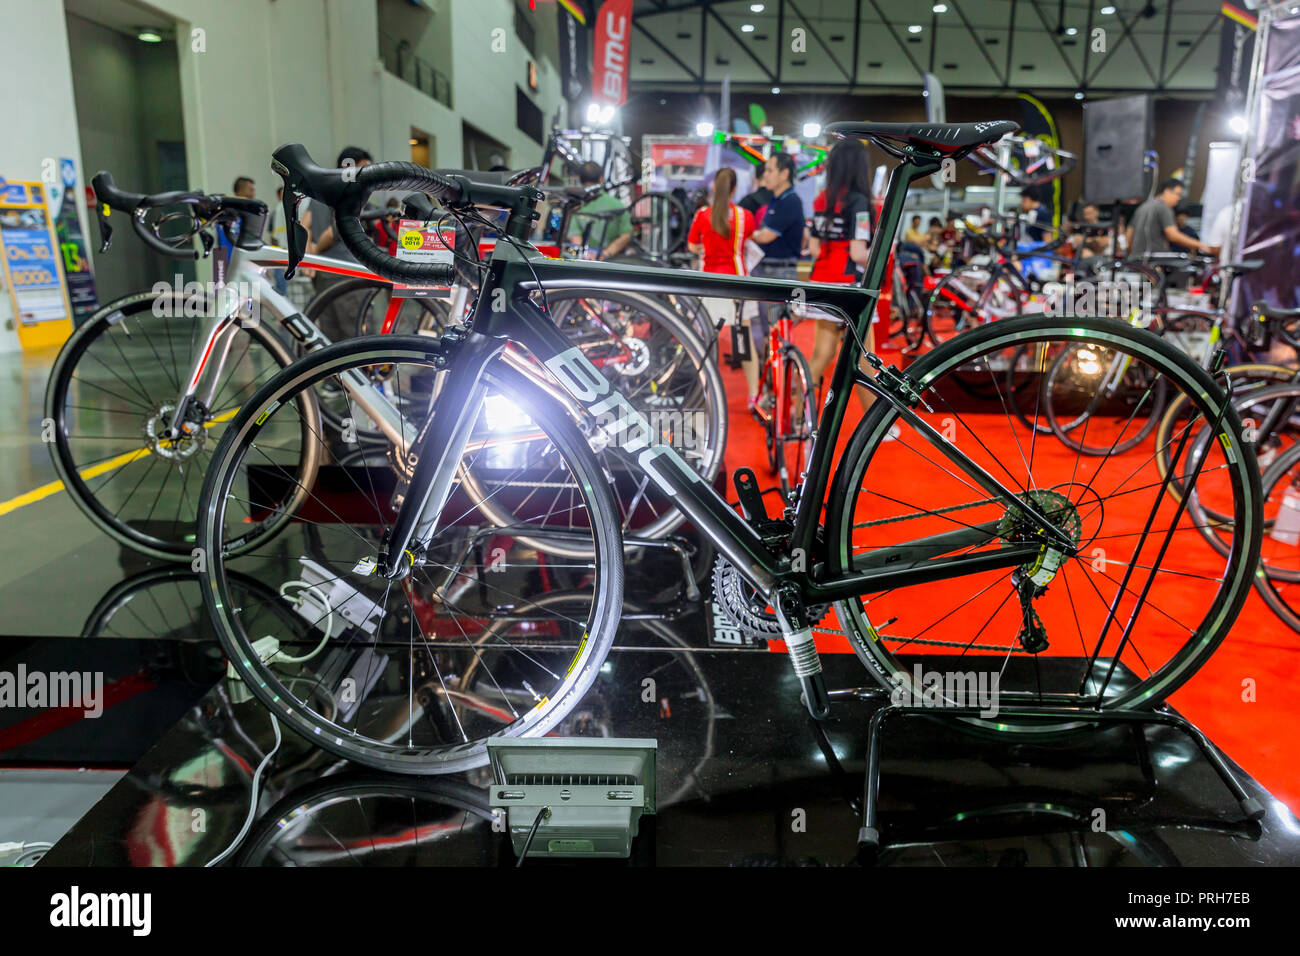 BMC Schweiz Rennrad Verkauf in International Bangkok Bike 2018 Bike Expo  Messe in Thailand. Heute sind die meisten Thais Aufmerksamkeit, die in der  übung besonders Stockfotografie - Alamy